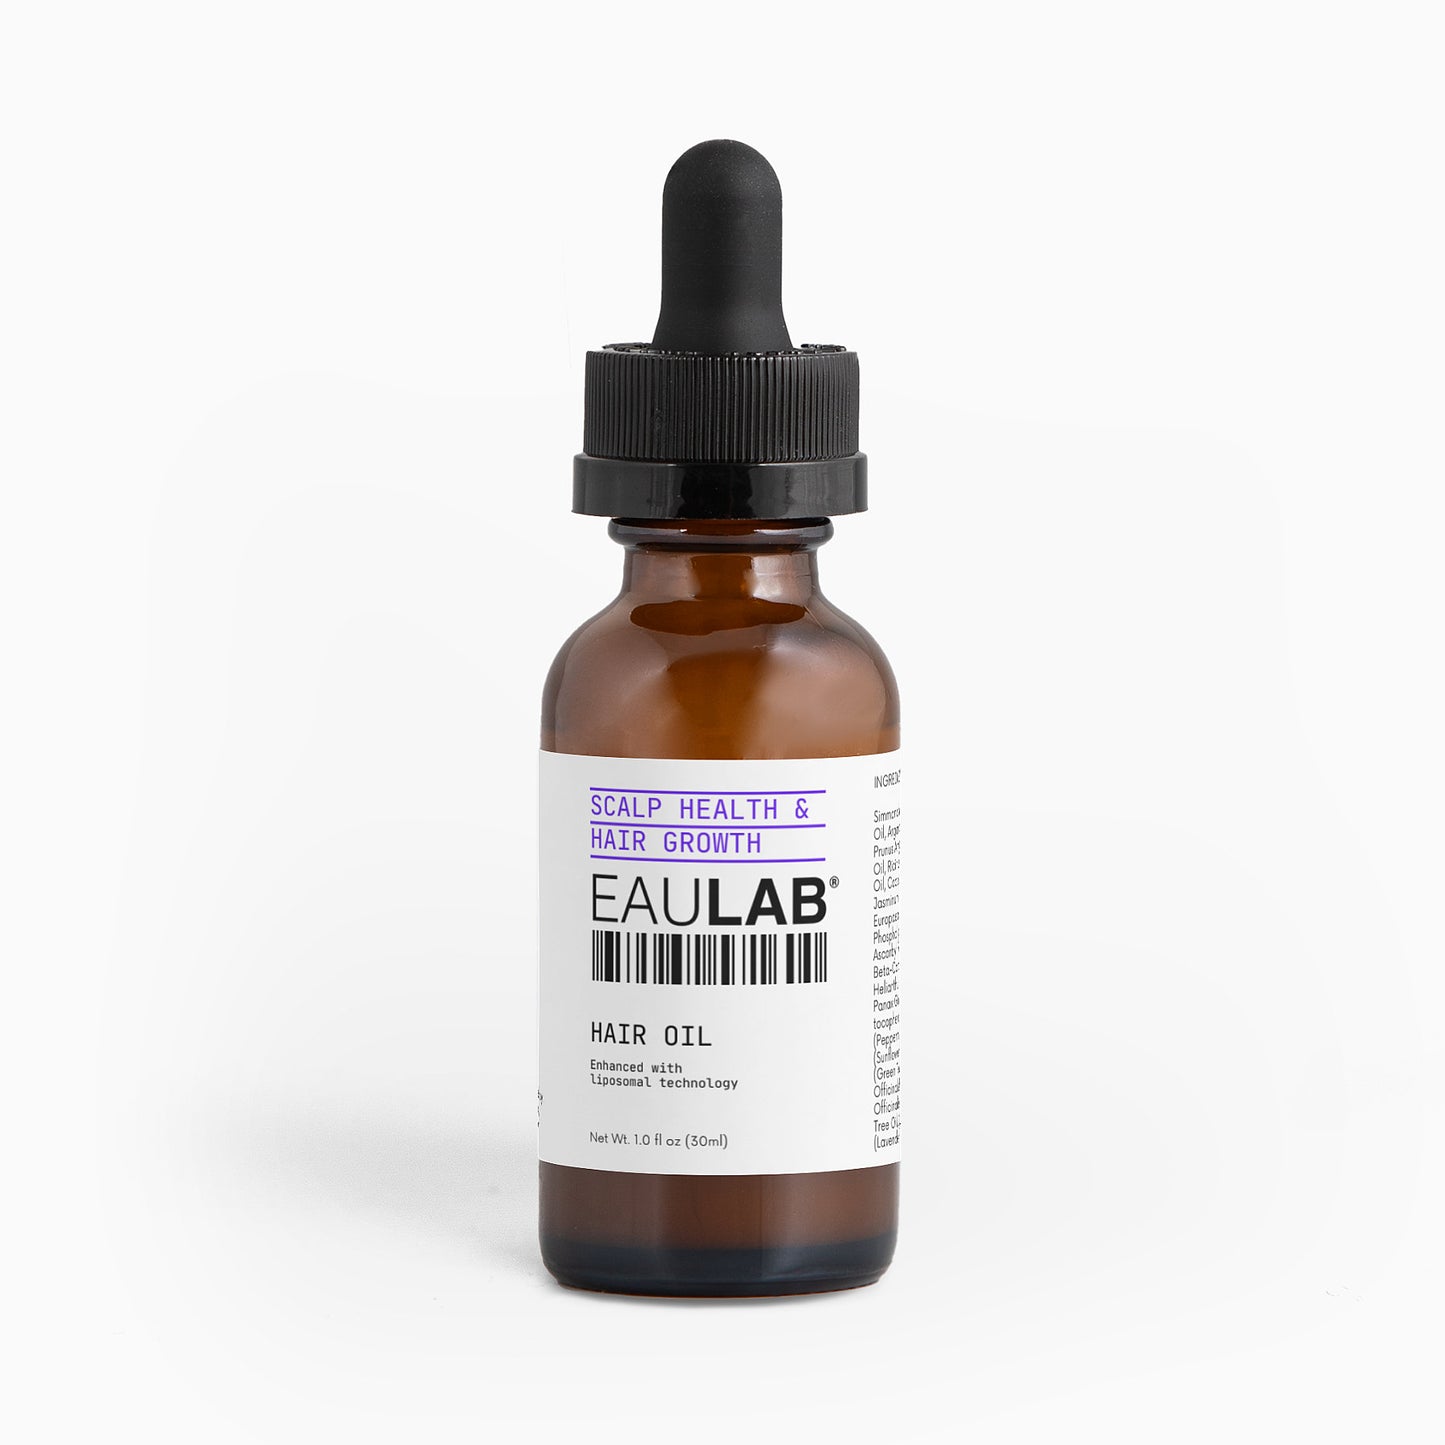 EAULAB® Hair Oil for Scalp Health and Hair Growth